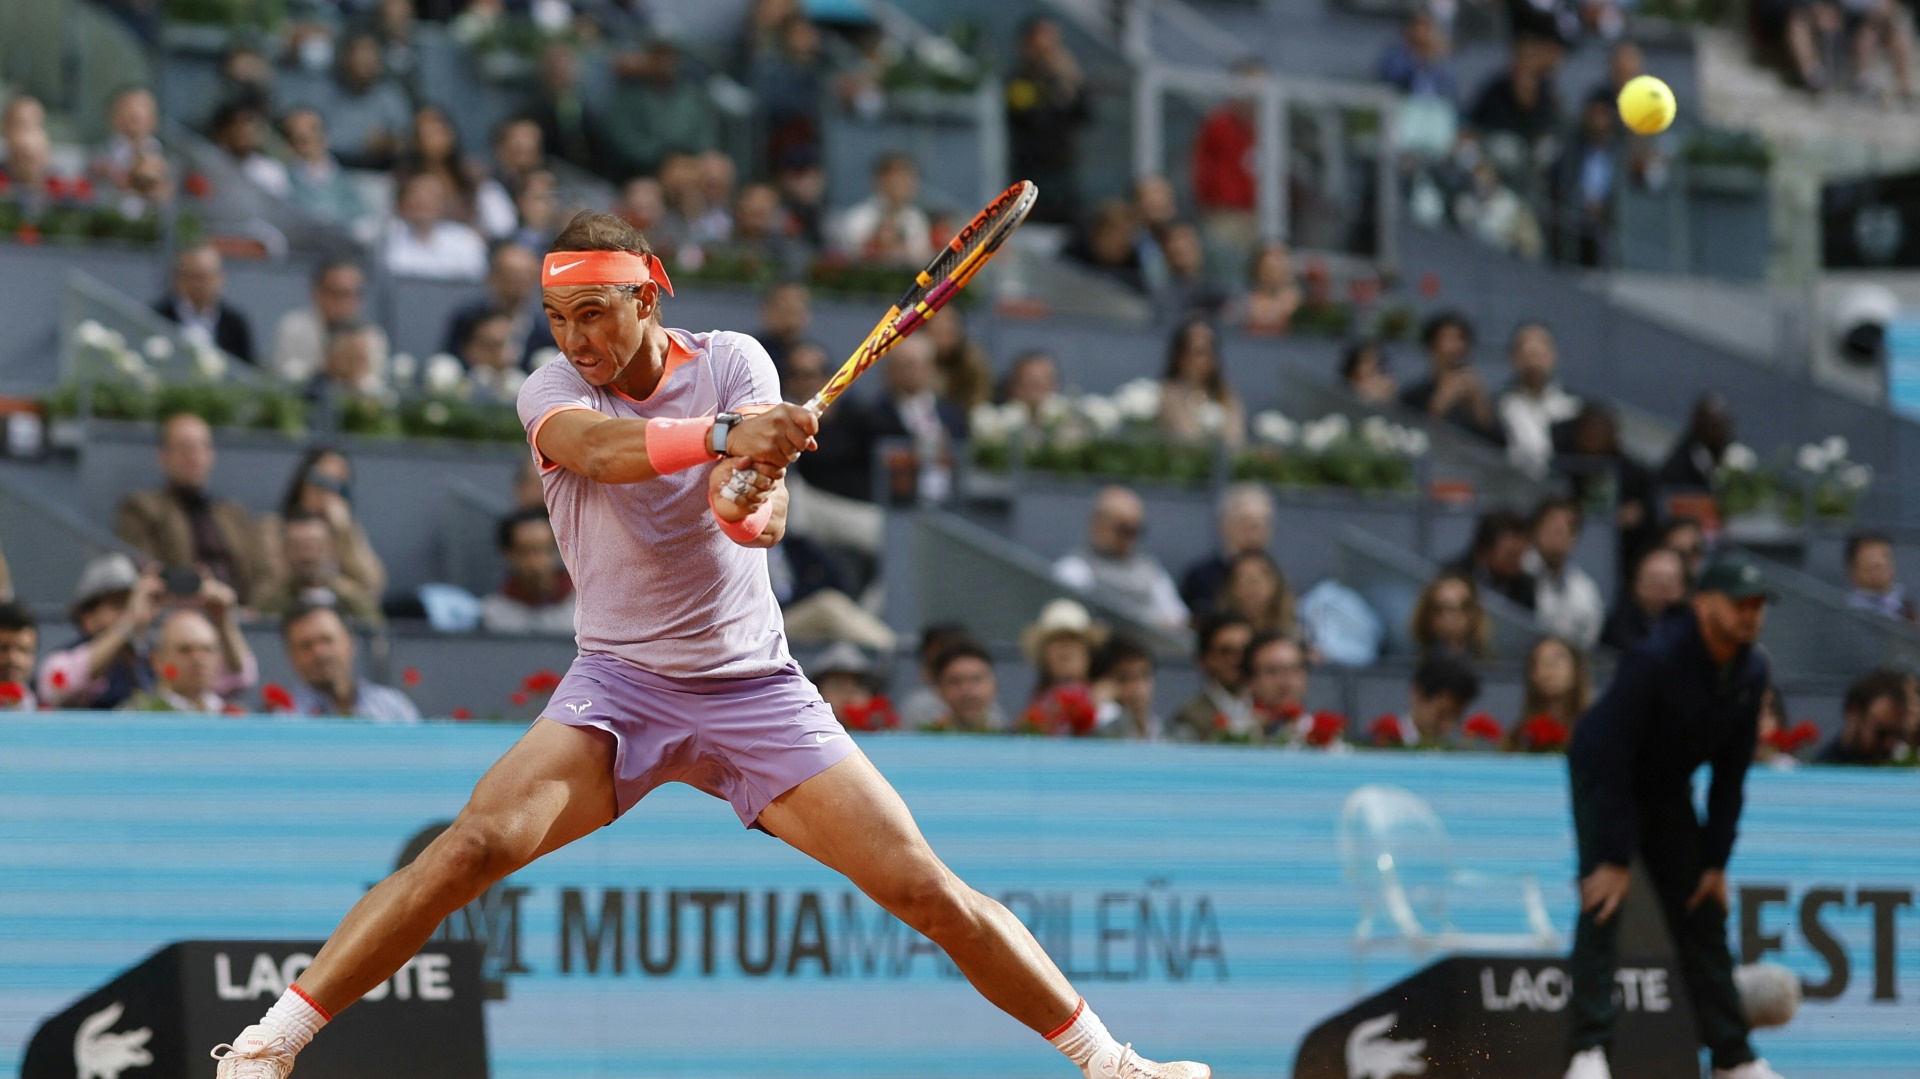 Immernoch eine Attraktion im Tennis-Zirkus: Rafael Nadal